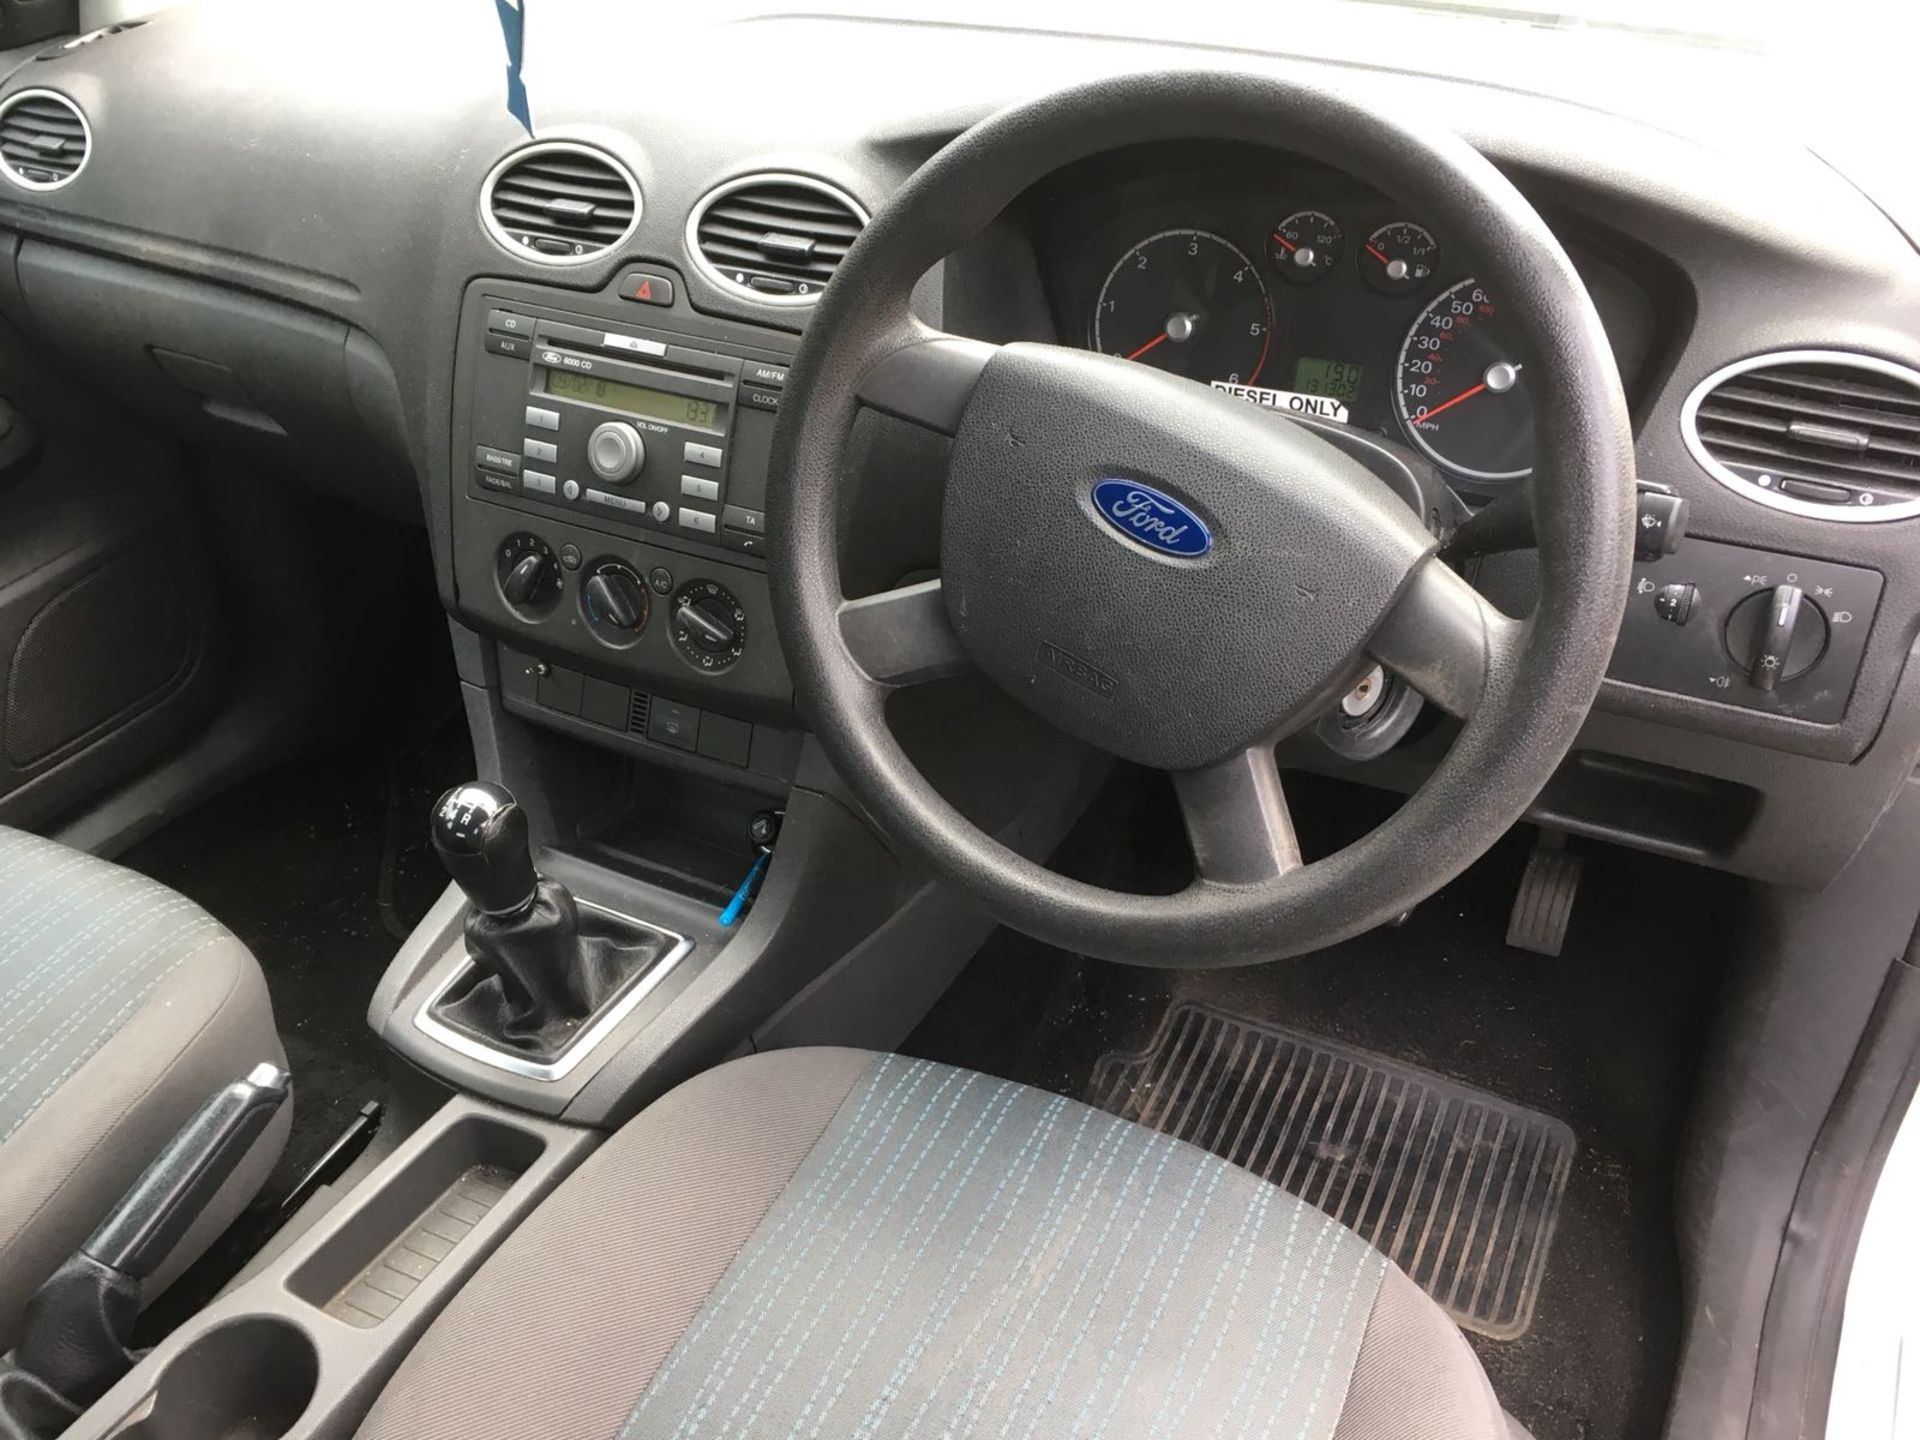 Ford Focus 1.6 TDCI - Bild 9 aus 11